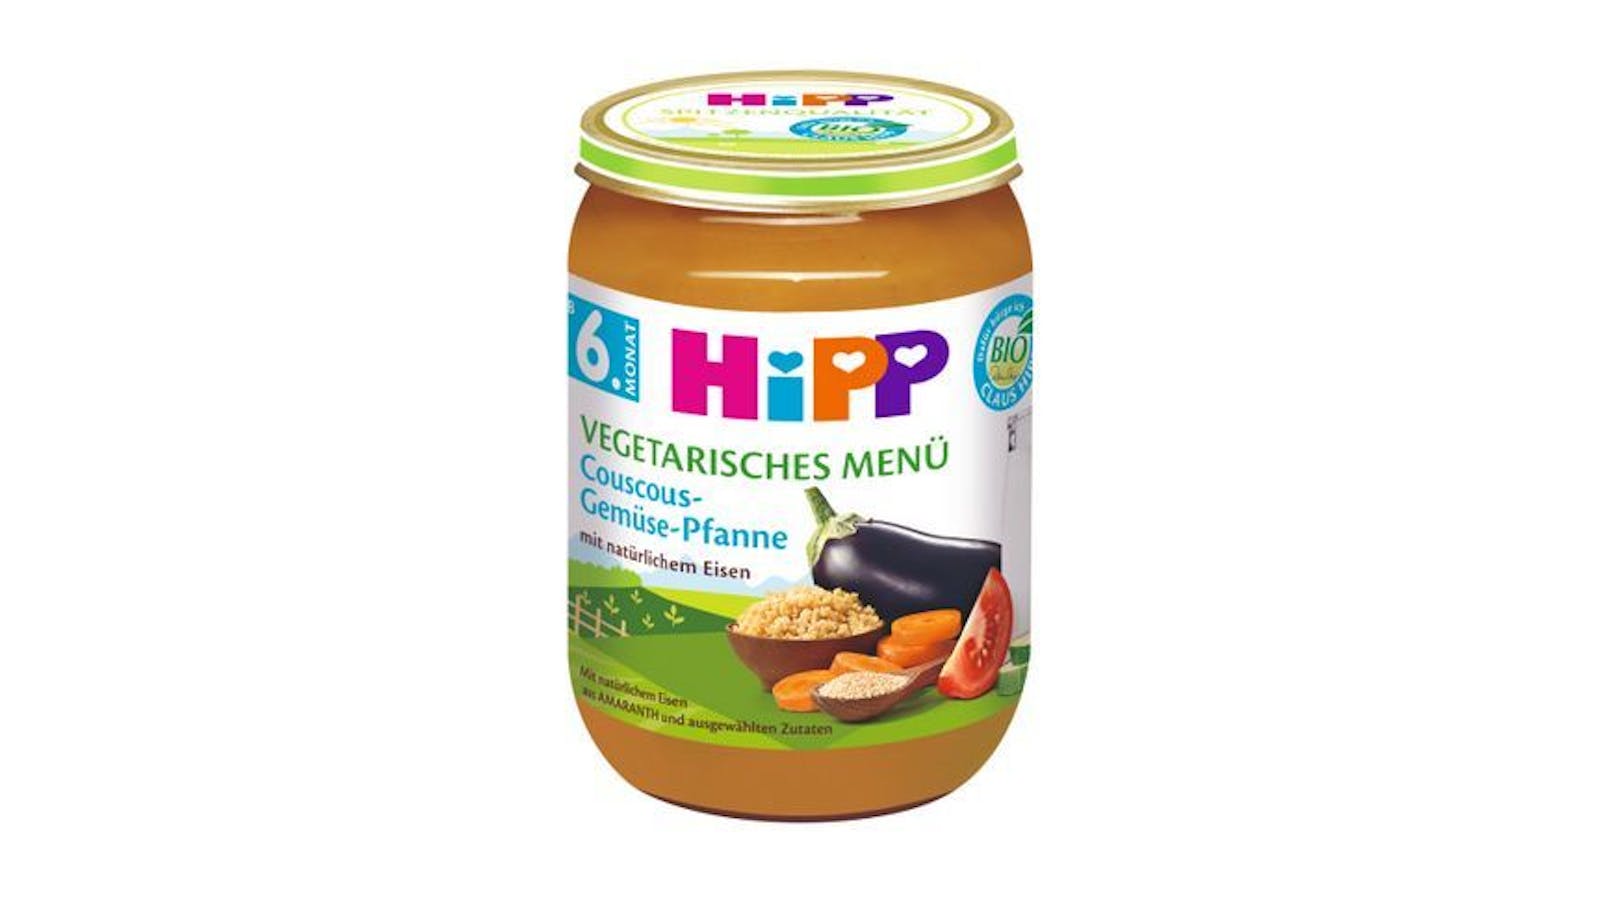 Die "Couscous-Gemüse-Pfanne" von Hipp um 1,25 Euro bekam die Note "2,2".